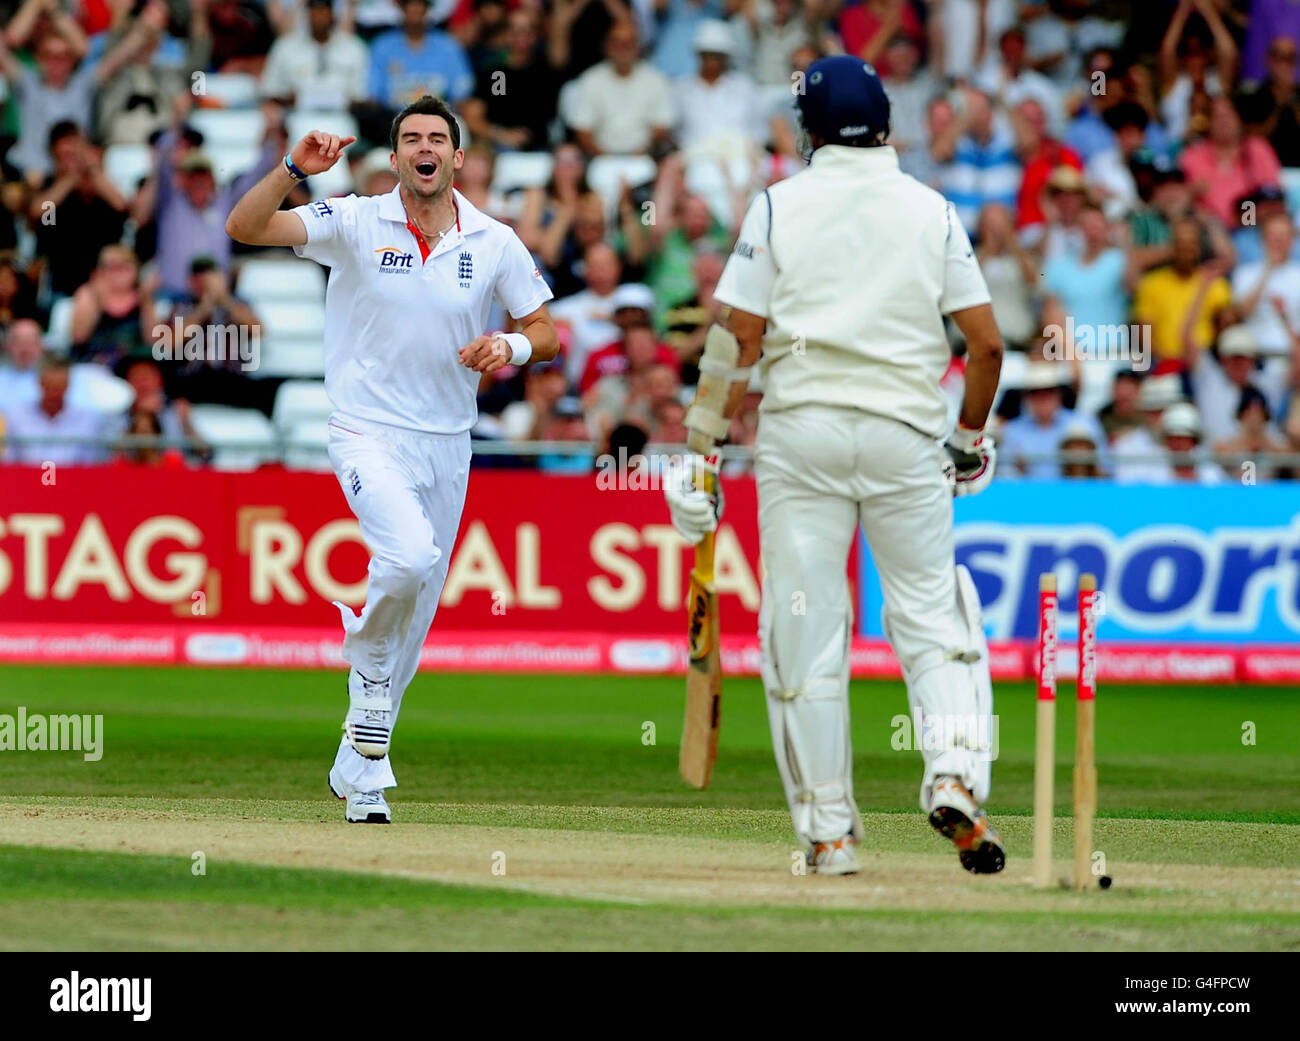 Cricket - npower second Test - quatrième jour - Angleterre / Inde - Trent Bridge.James Anderson, en Angleterre, célèbre après le bowling VVS Laxman d'Indai lors du deuxième match d'essai de npower à Trent Bridge, Nottingham. Banque D'Images